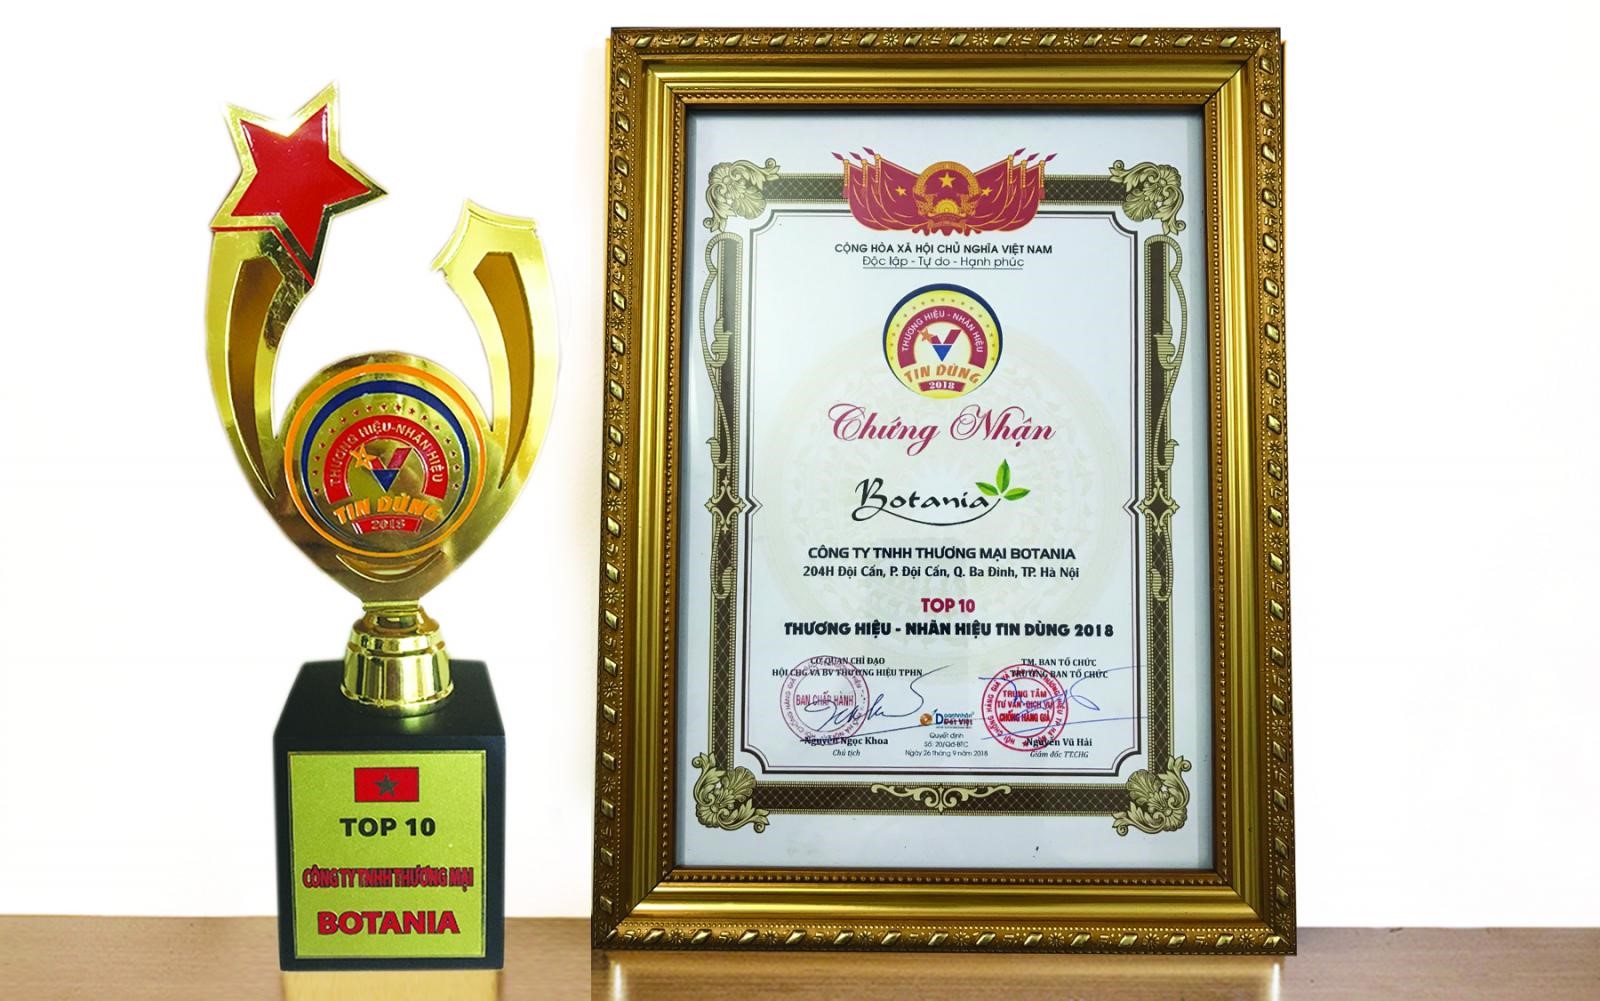   Năm 2018, Botania đã vinh dự lọt “TOP 10 thương hiệu, nhãn hiệu tin dùng” do trung tâm chống hàng giả, hội chống hàng giả và bảo vệ thương hiệu thành phố Hà Nội trao tặng.